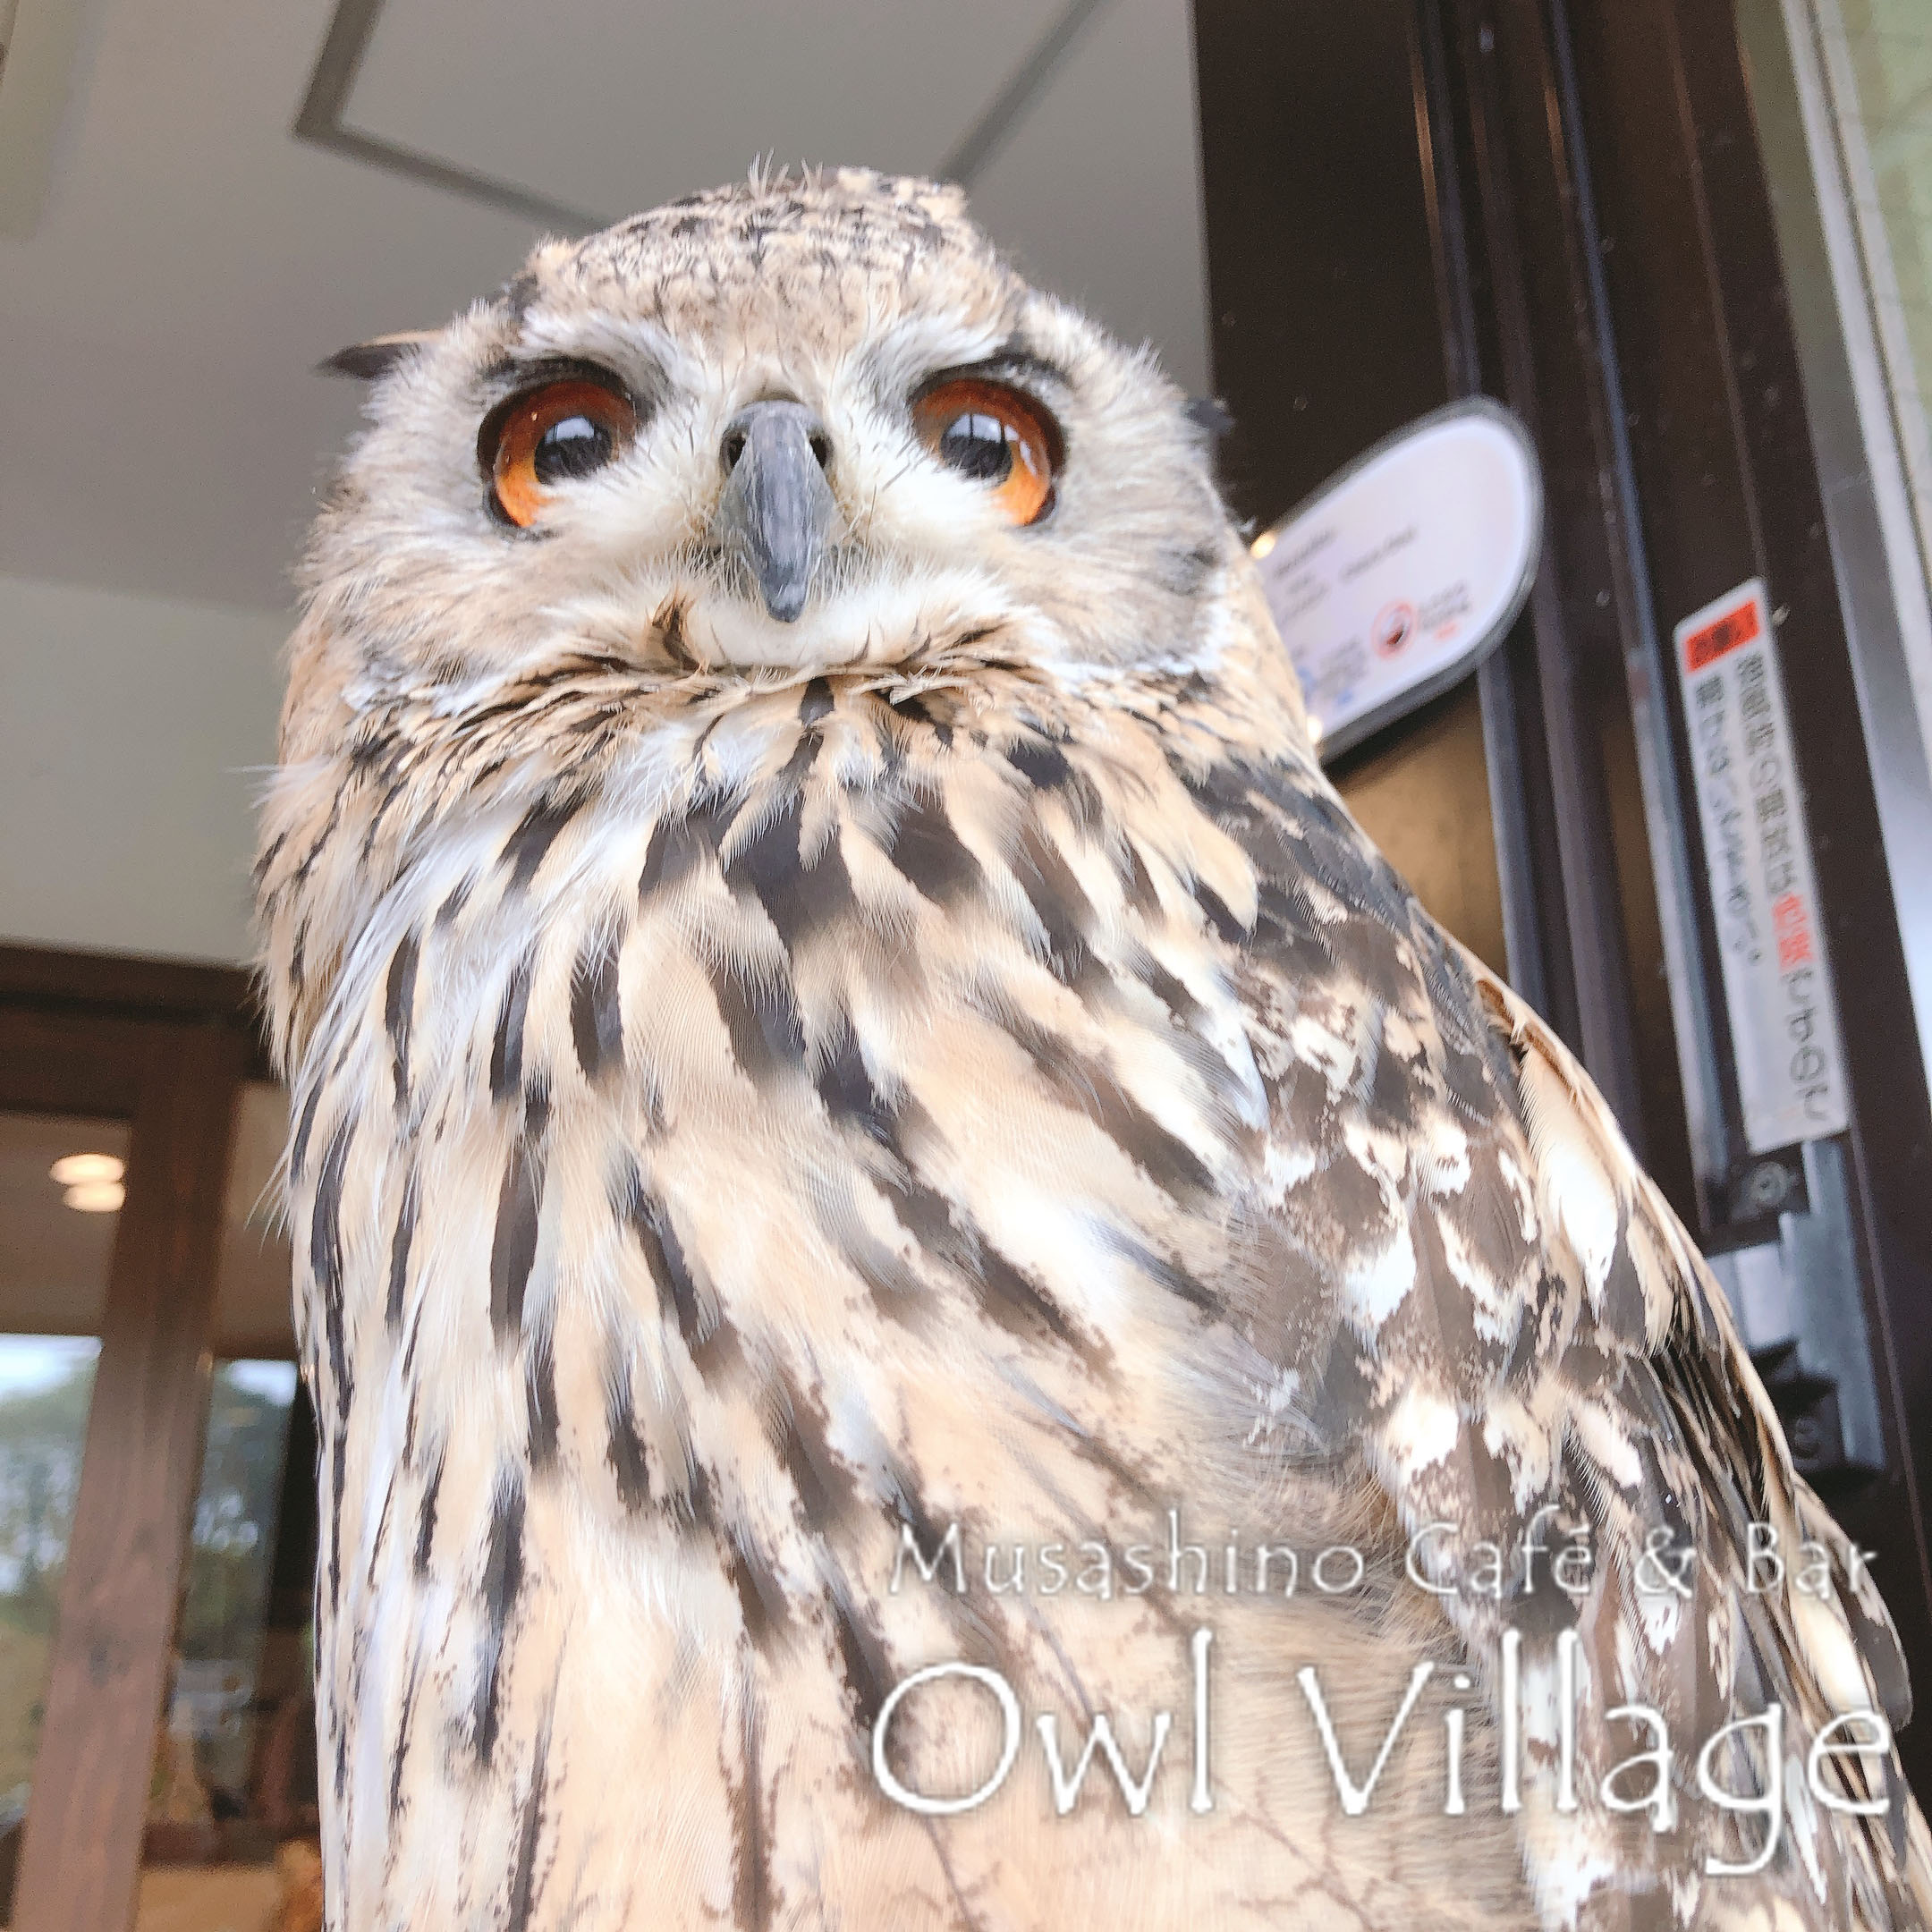 owl cafe harajuku down load free photo 0365 Indian Eagle Owl